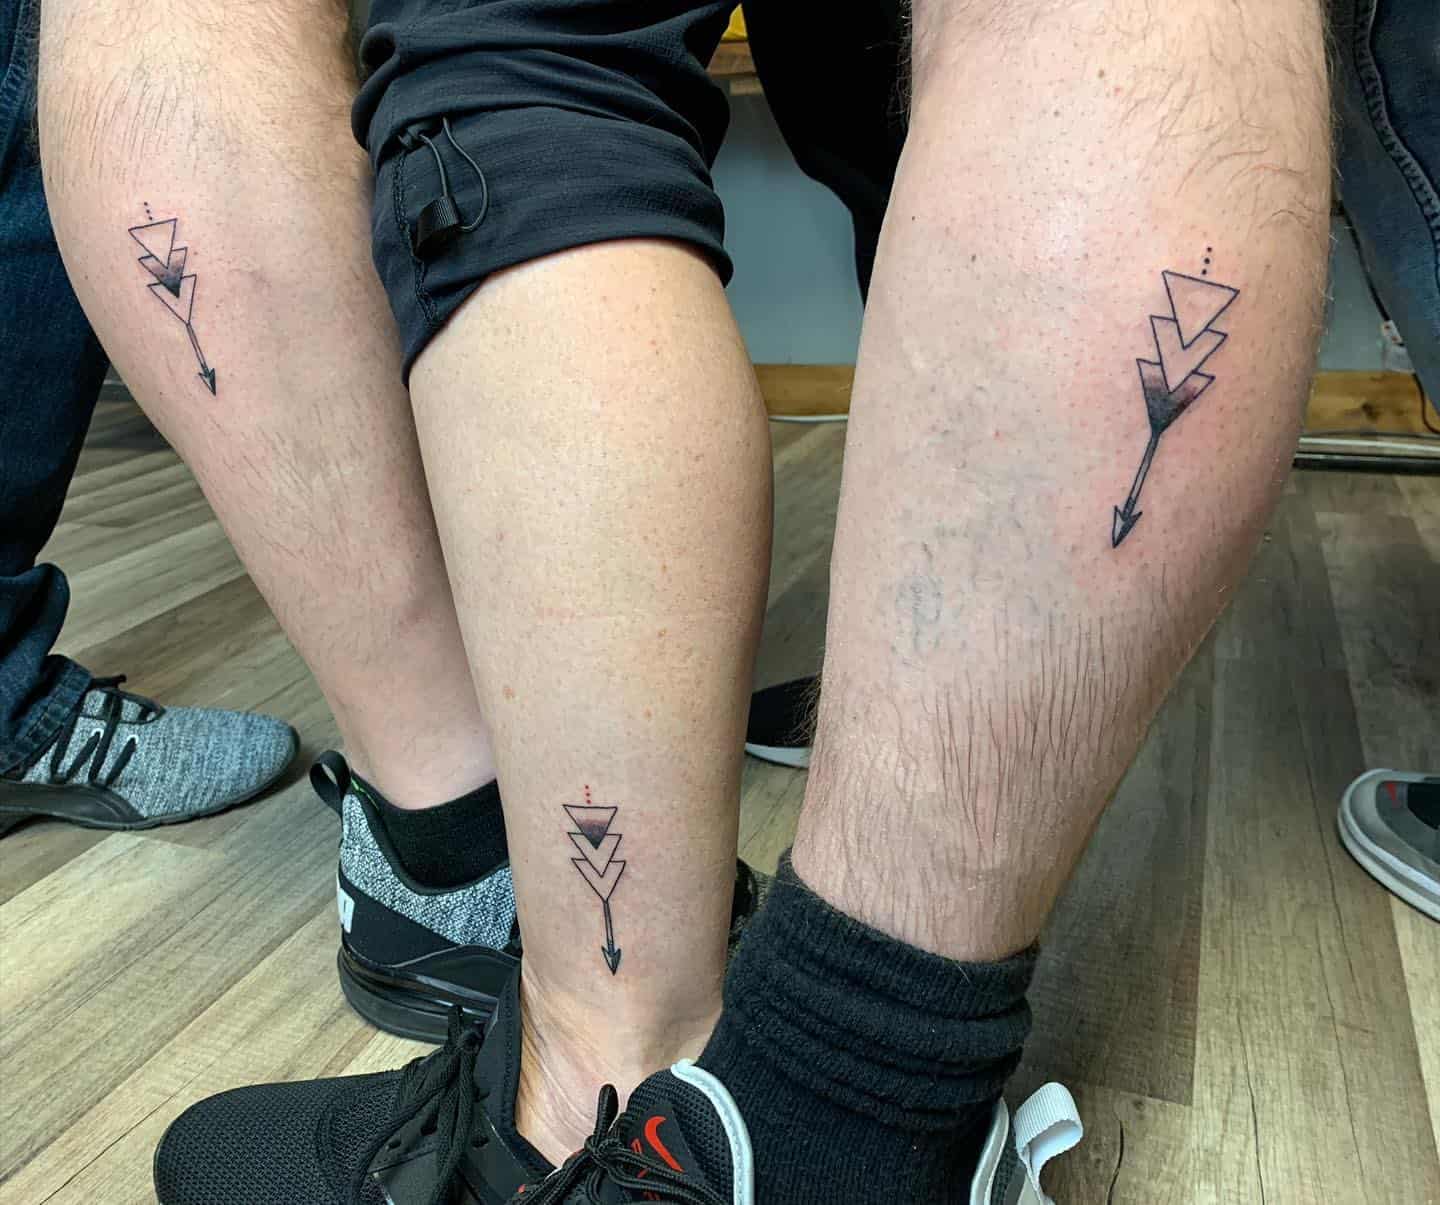 BrotherSister Tattoos  POPSUGAR Love  Sex